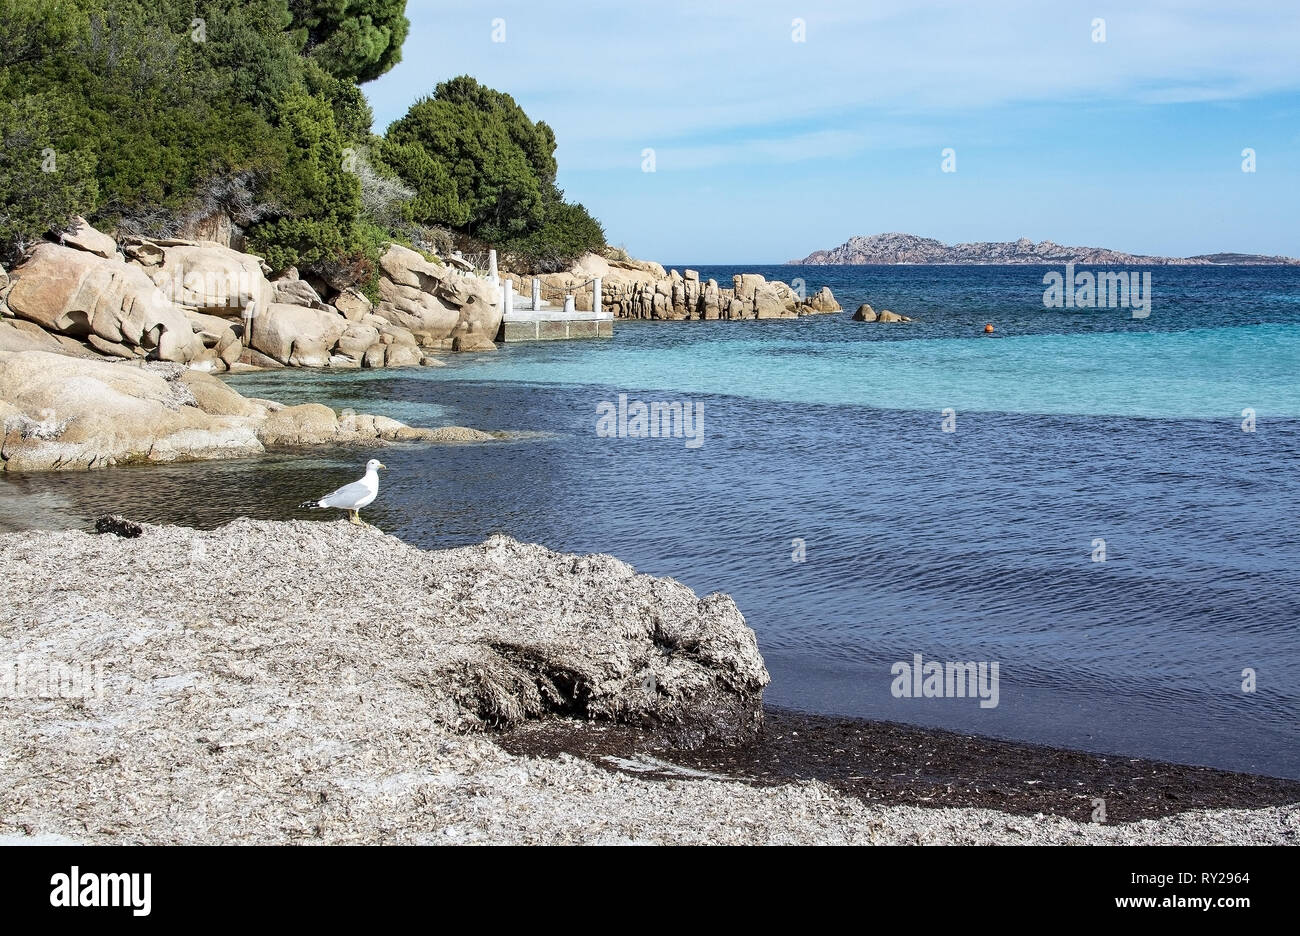 Möwe auf trockenen Winter Seegras, grünes Wasser und lustige Granitfelsen Formen auf einem Strand in Costa Smeralda, Sardinien, Italien im März. Stockfoto